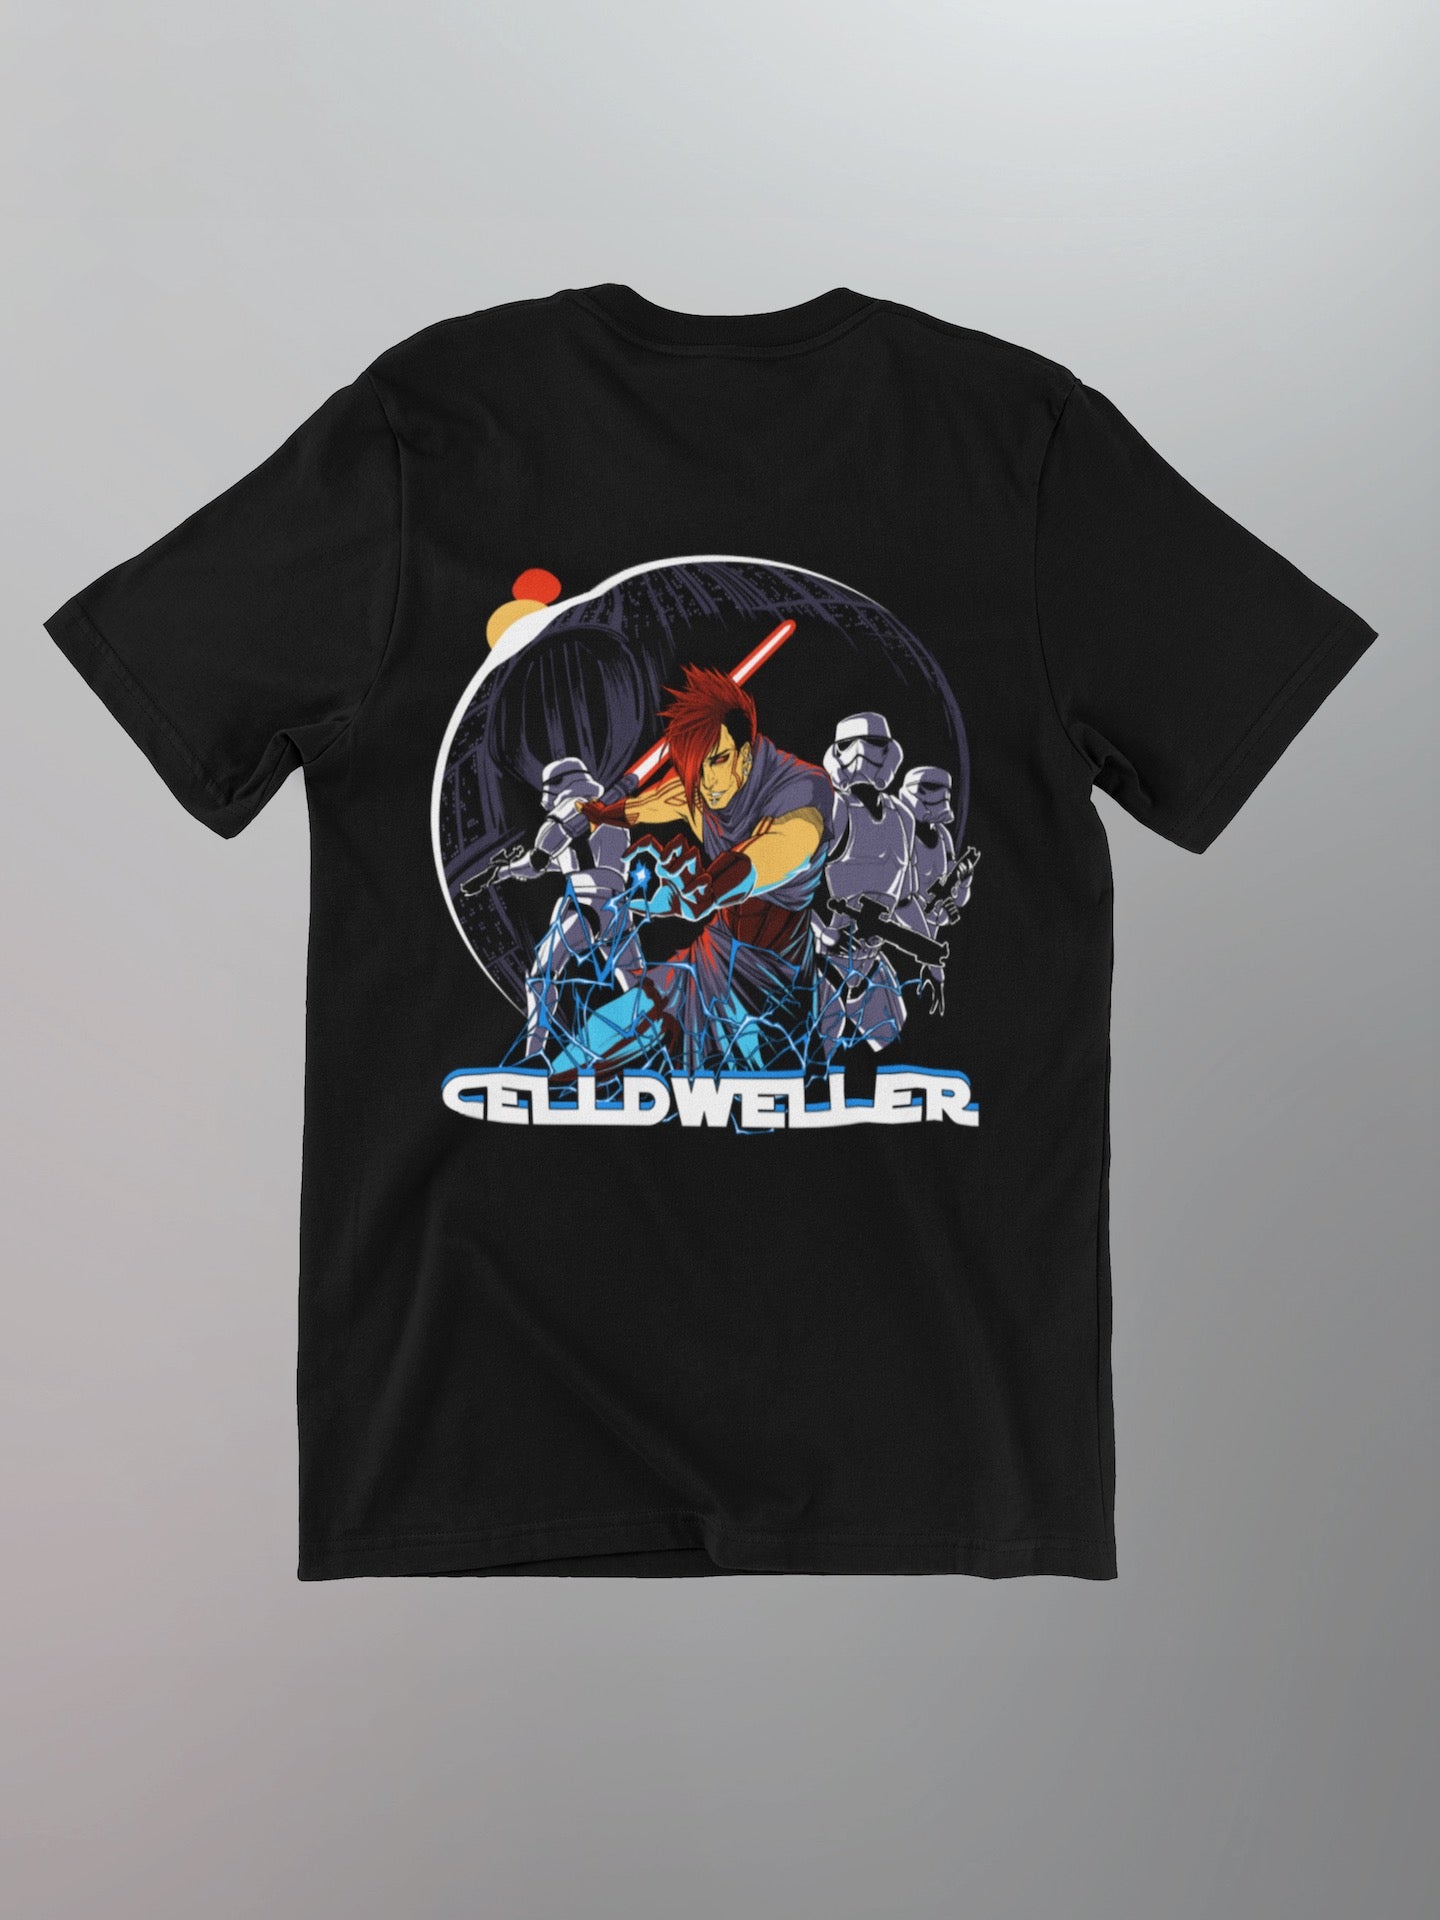 Celldweller - Sith Shirt